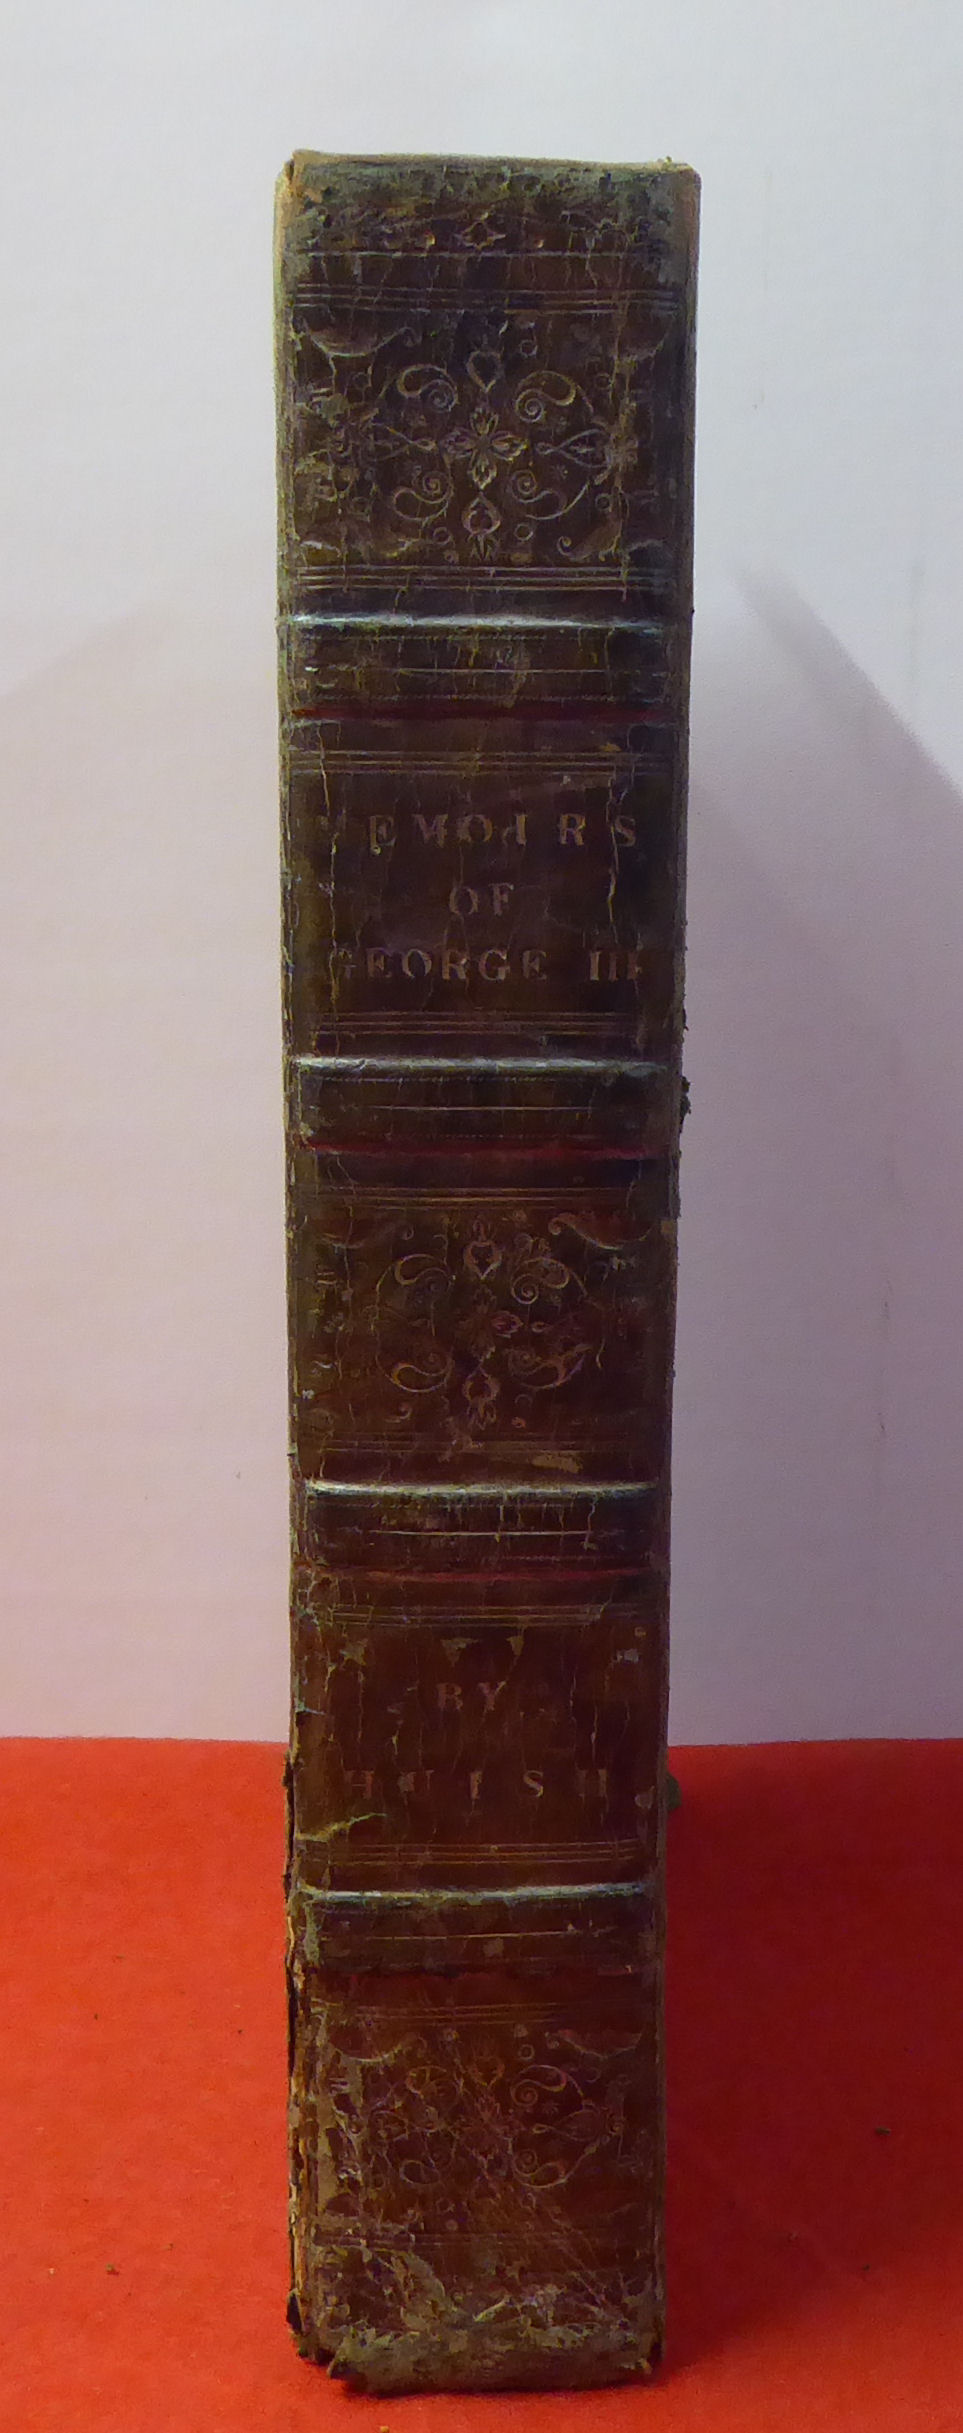 Book: 'Memoirs of George III' by Robert Huish Esq, printed by Thomas Kelly of London  dated 1821,